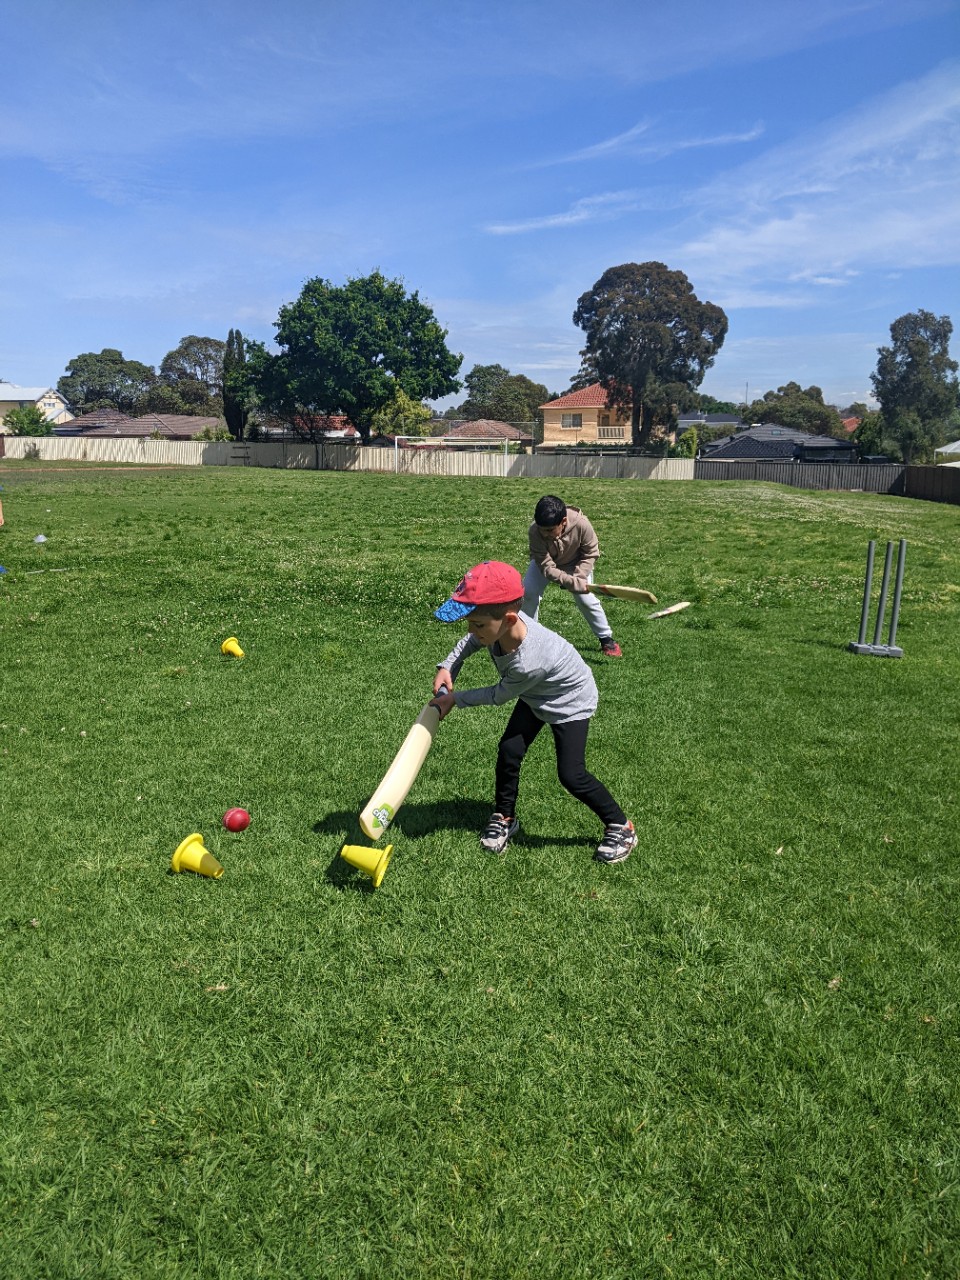 Cricket NSW activities